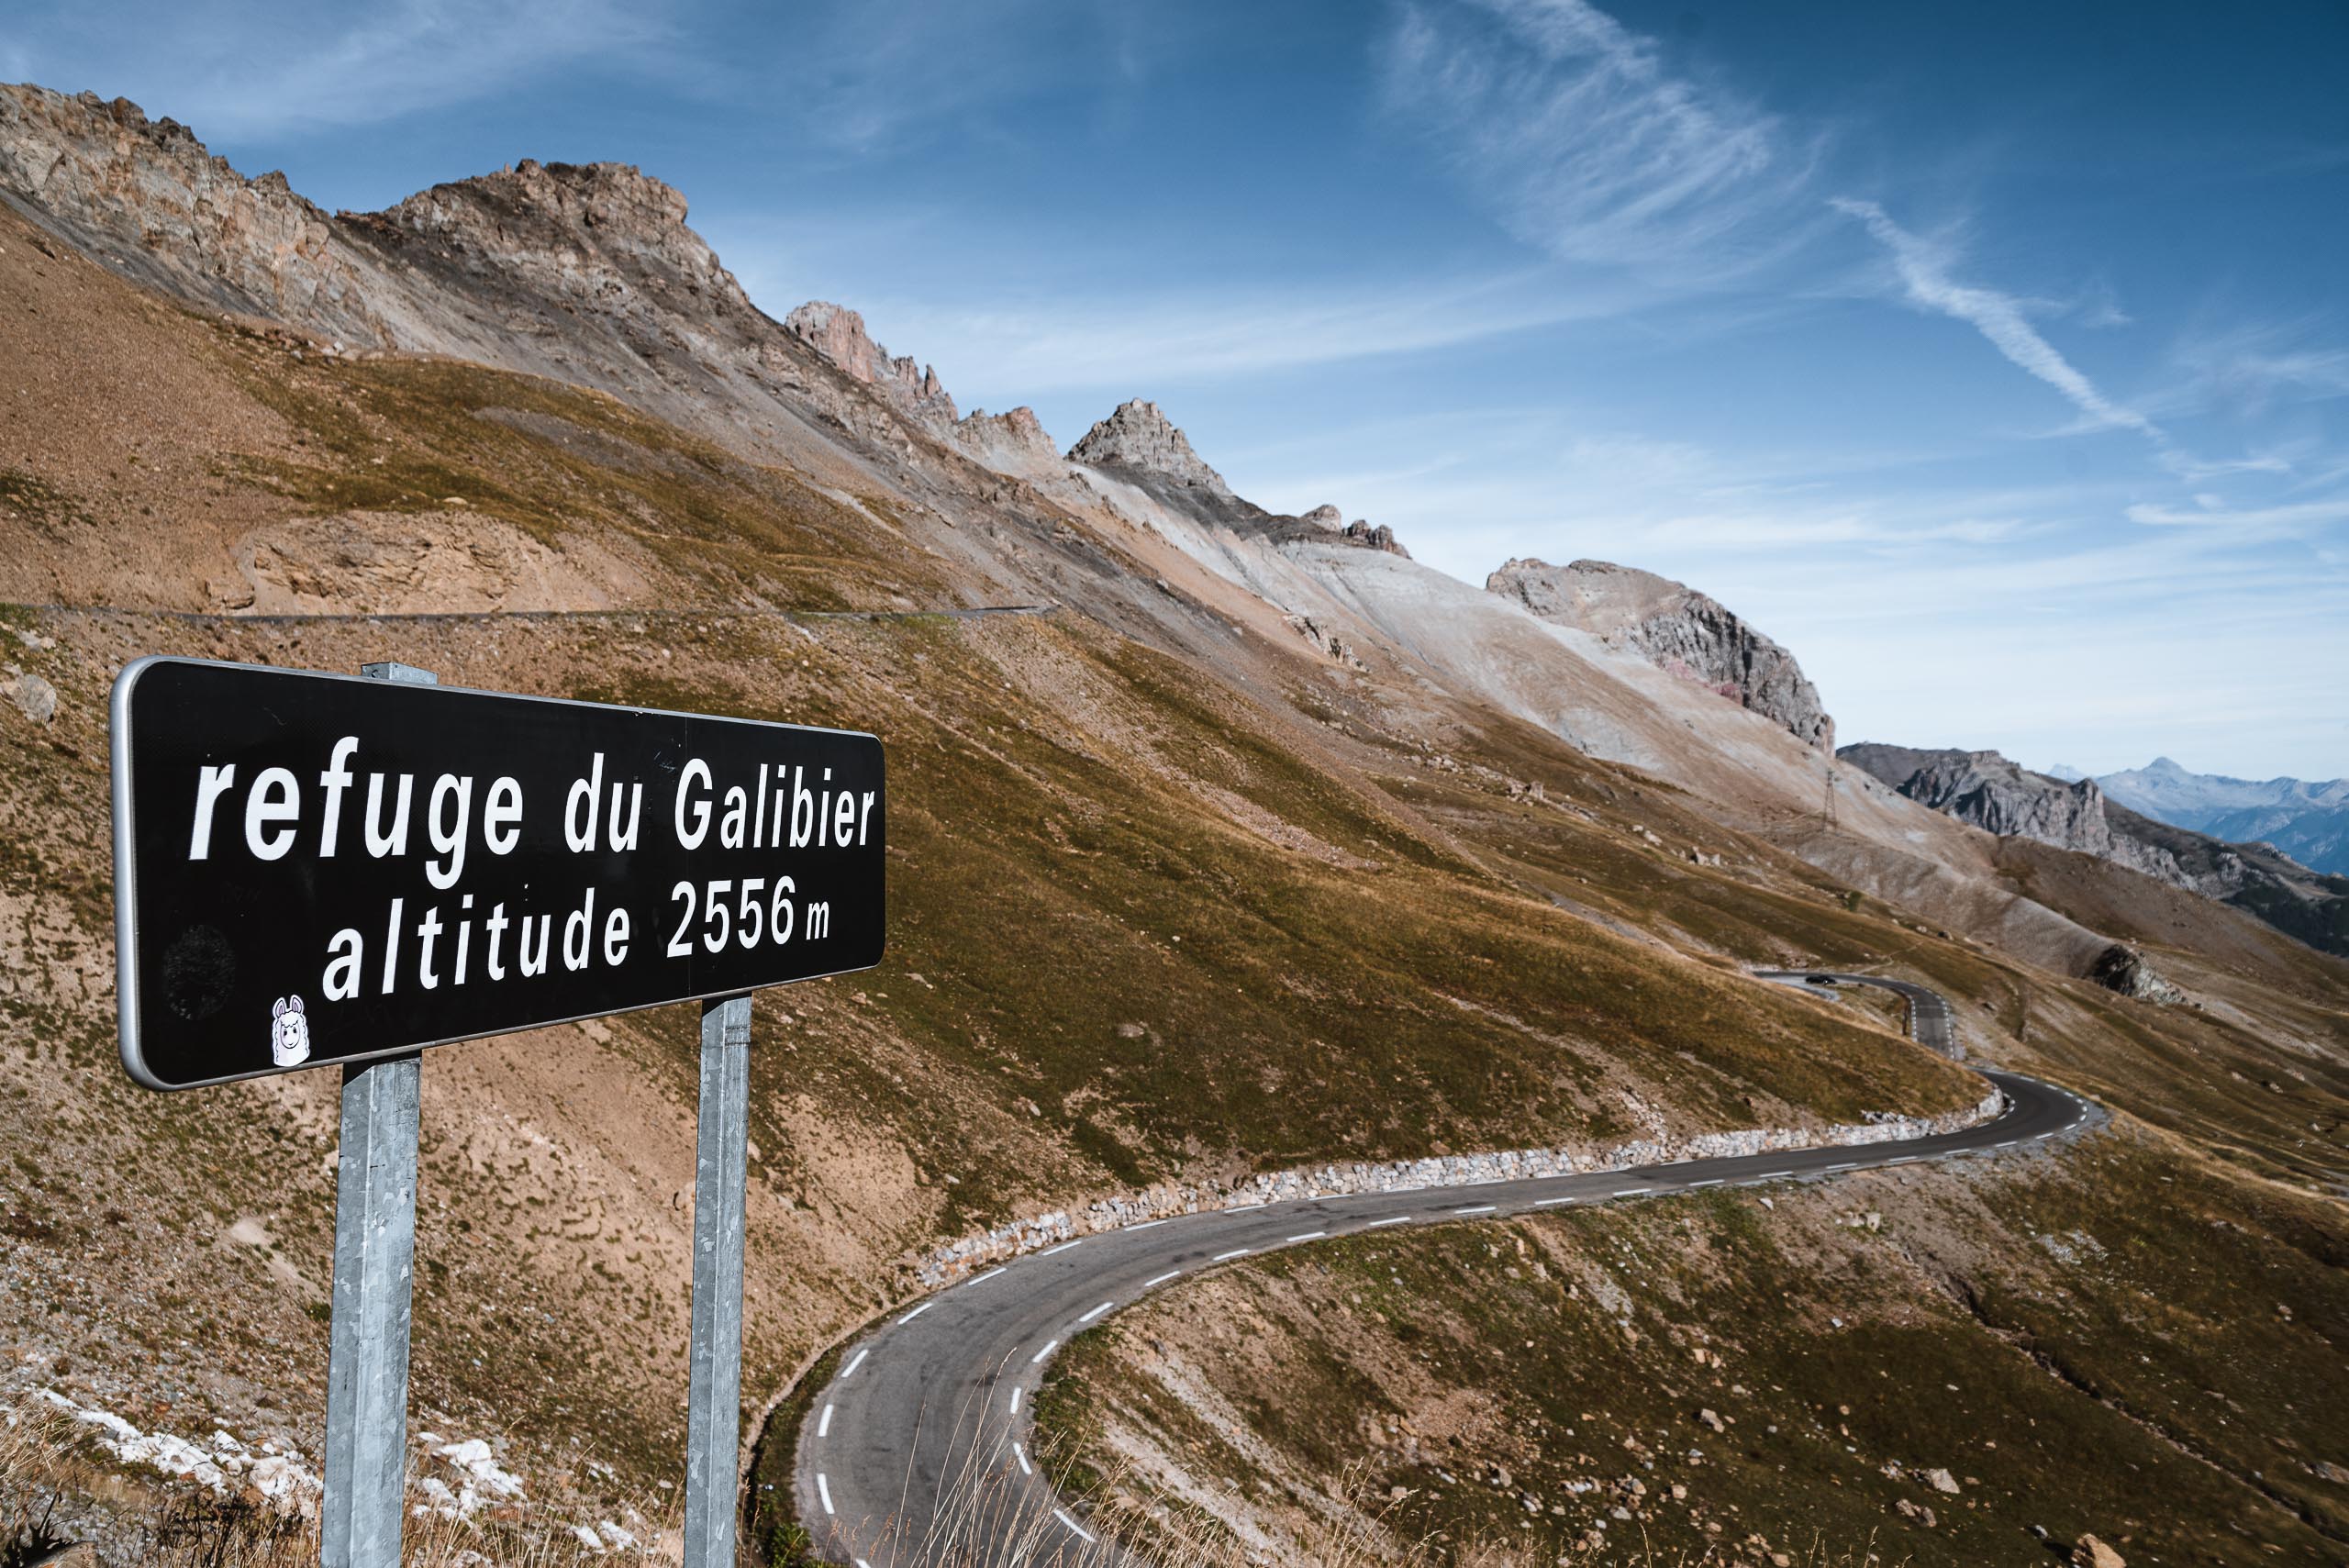 Przełęcz Col du Galibier 2645 m. npm